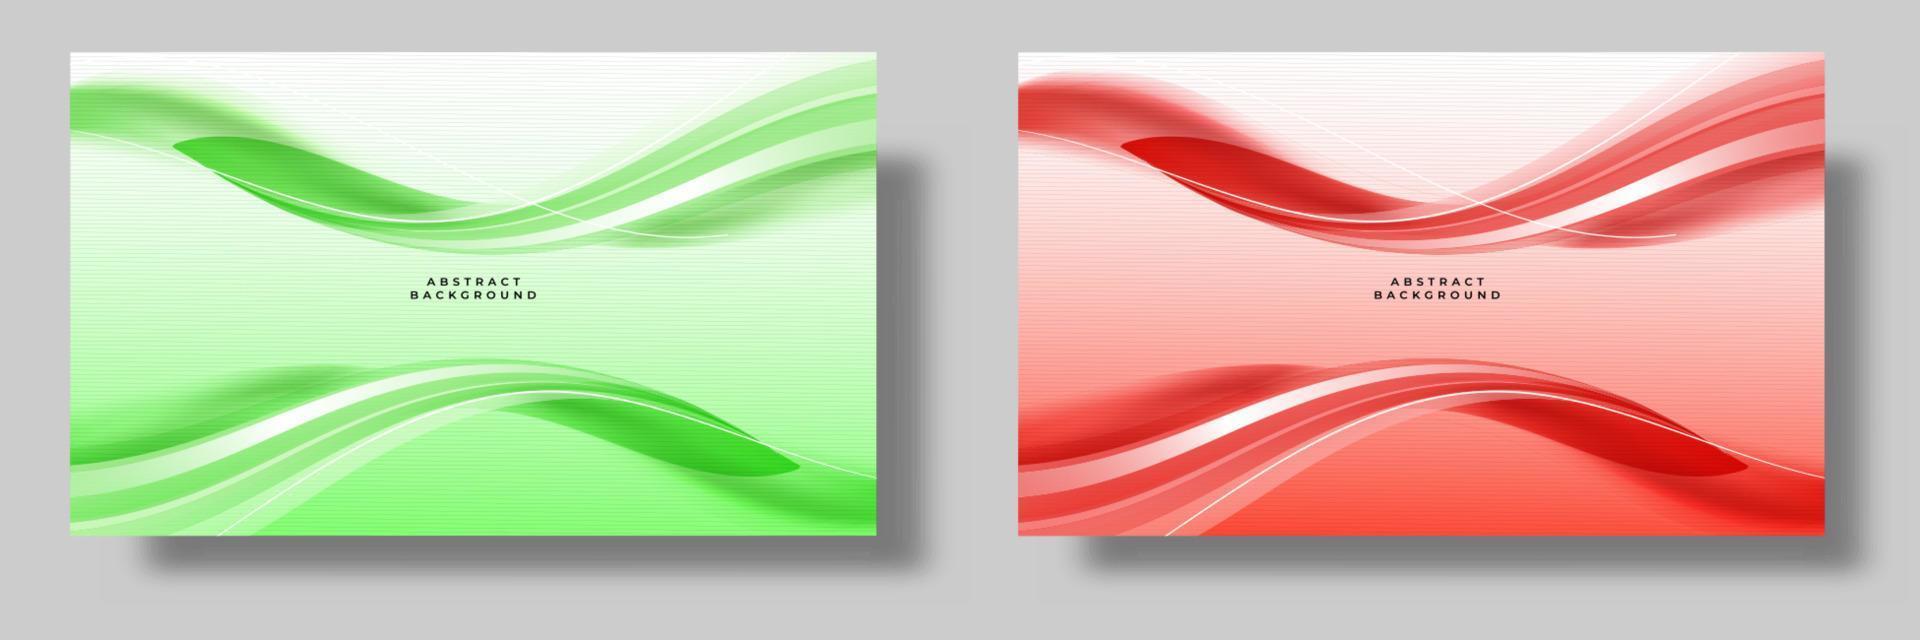 conjunto de fundos de ondas abstratas modernas em cores verdes e vermelhas vetor